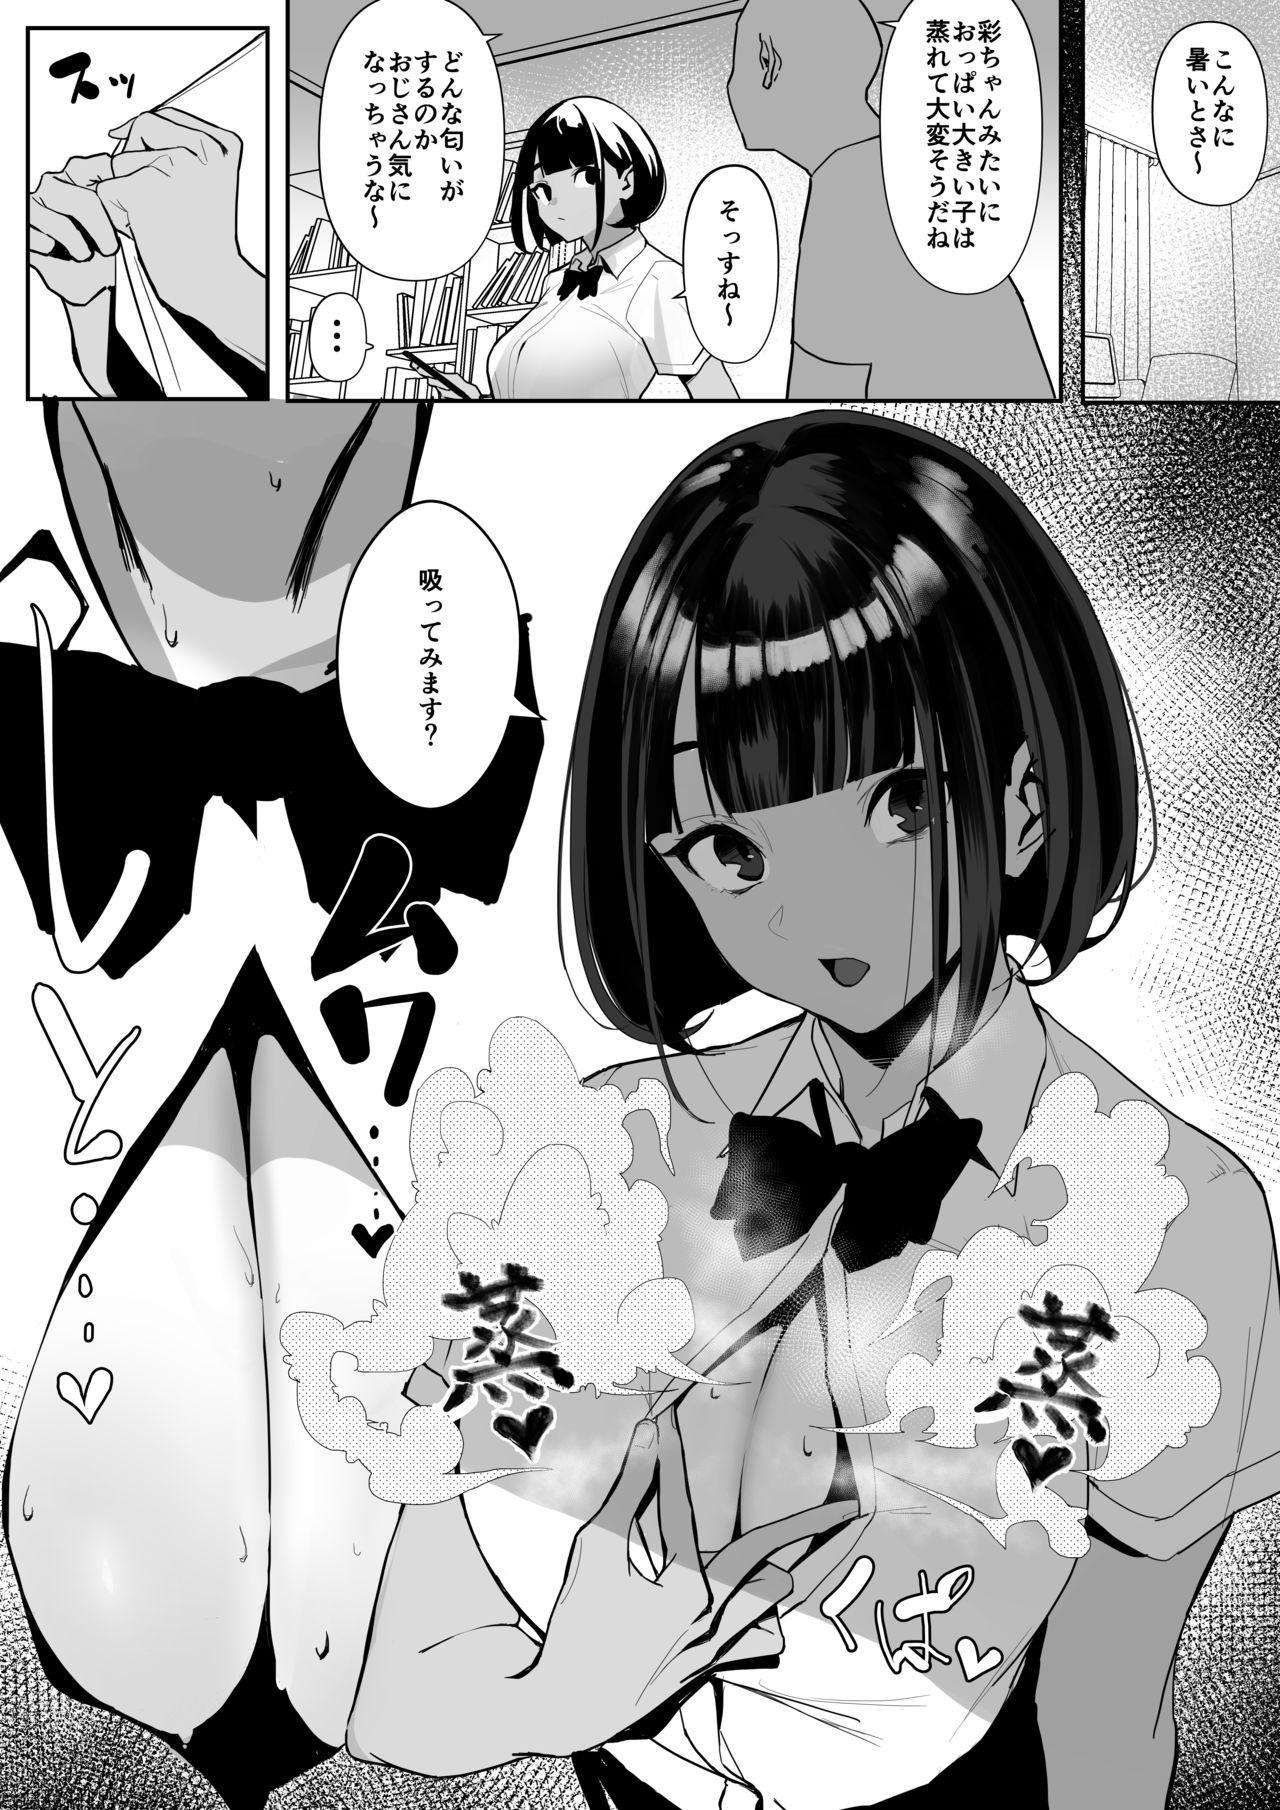 Vecina Rikujobu chan - Original Sentando - Page 10